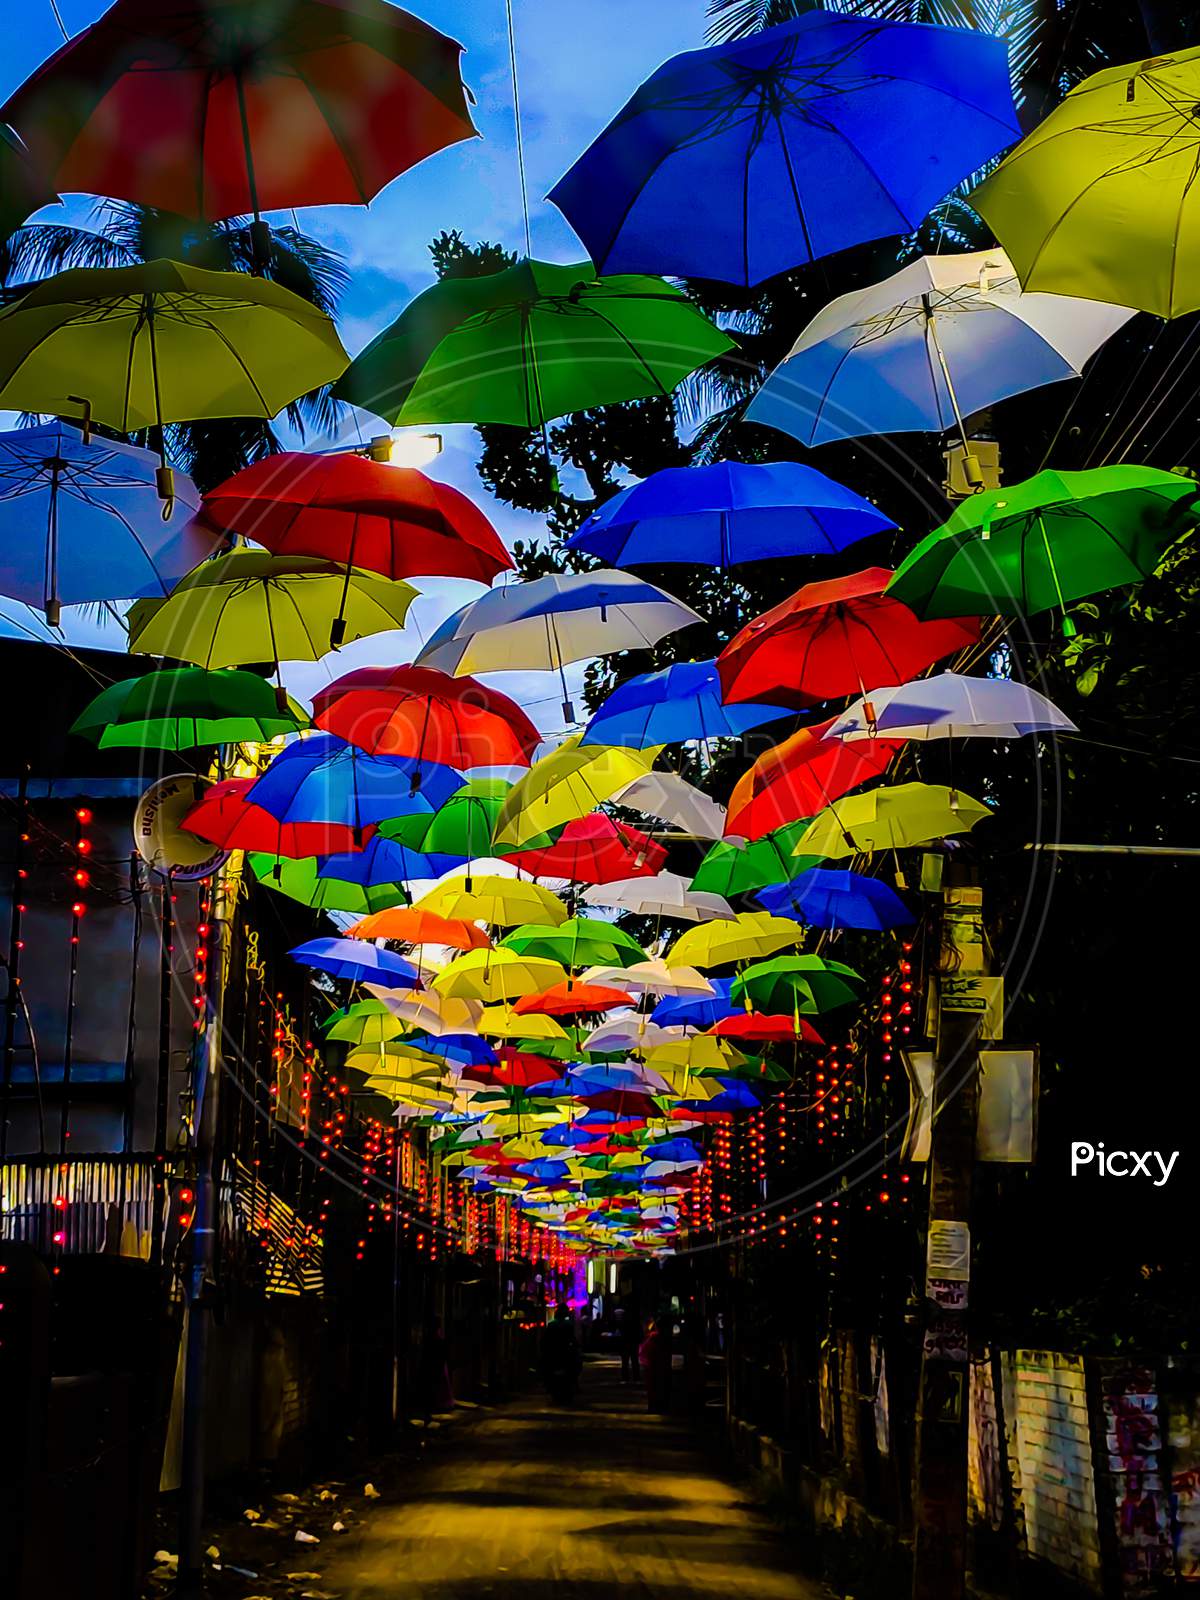 Umbrella street(DURGA PUJA)